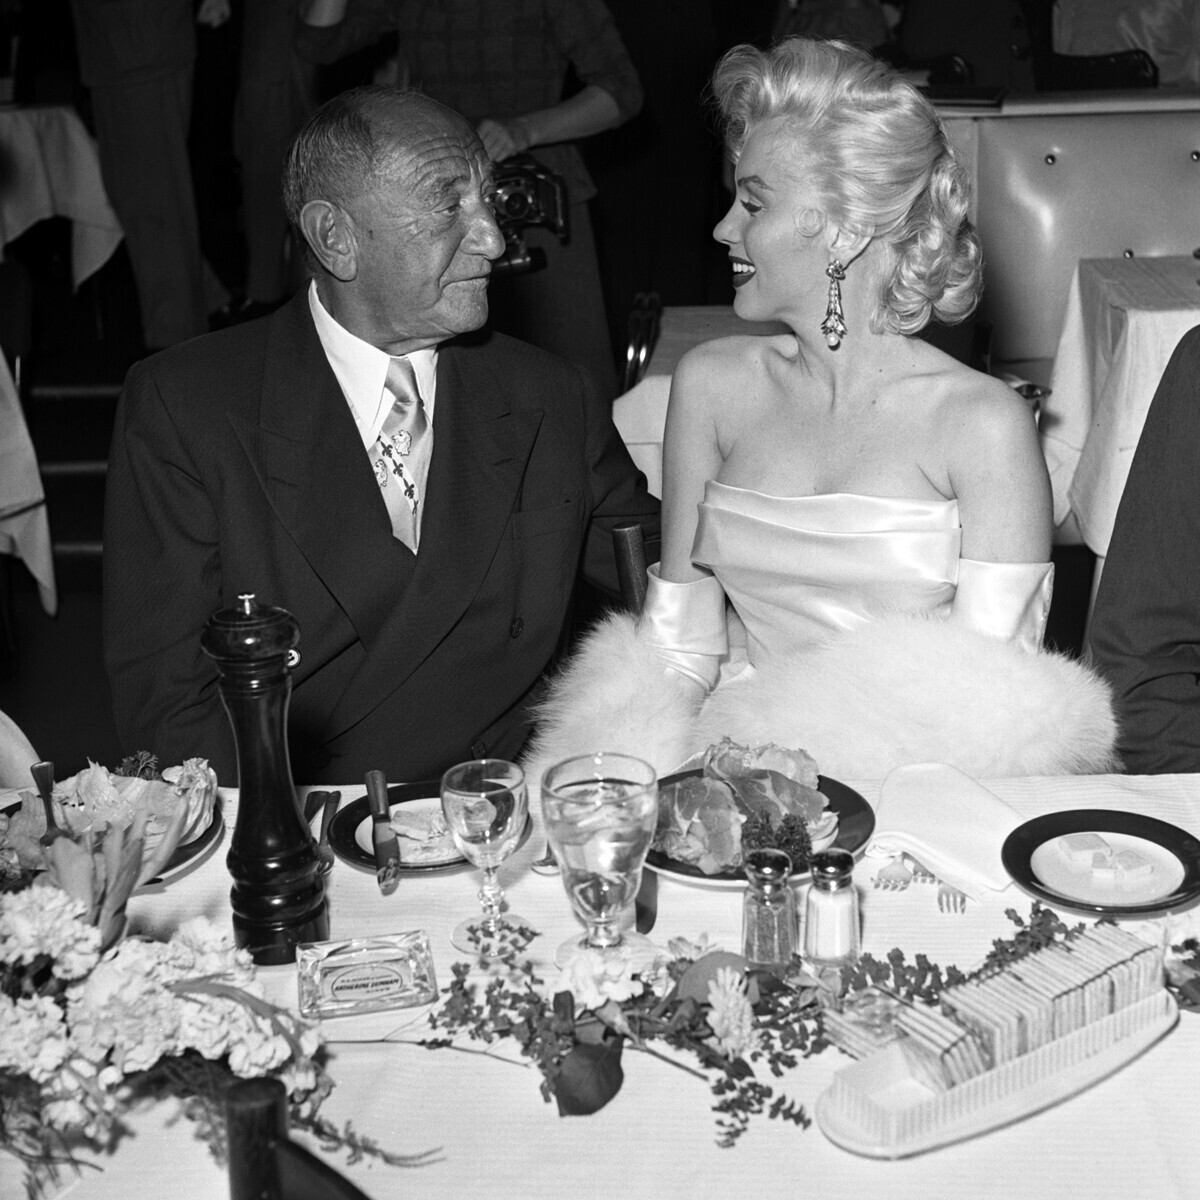 Joseph Schenck e Marilyn Monroe na festa de aniversário de Walter Winchell, 1953

